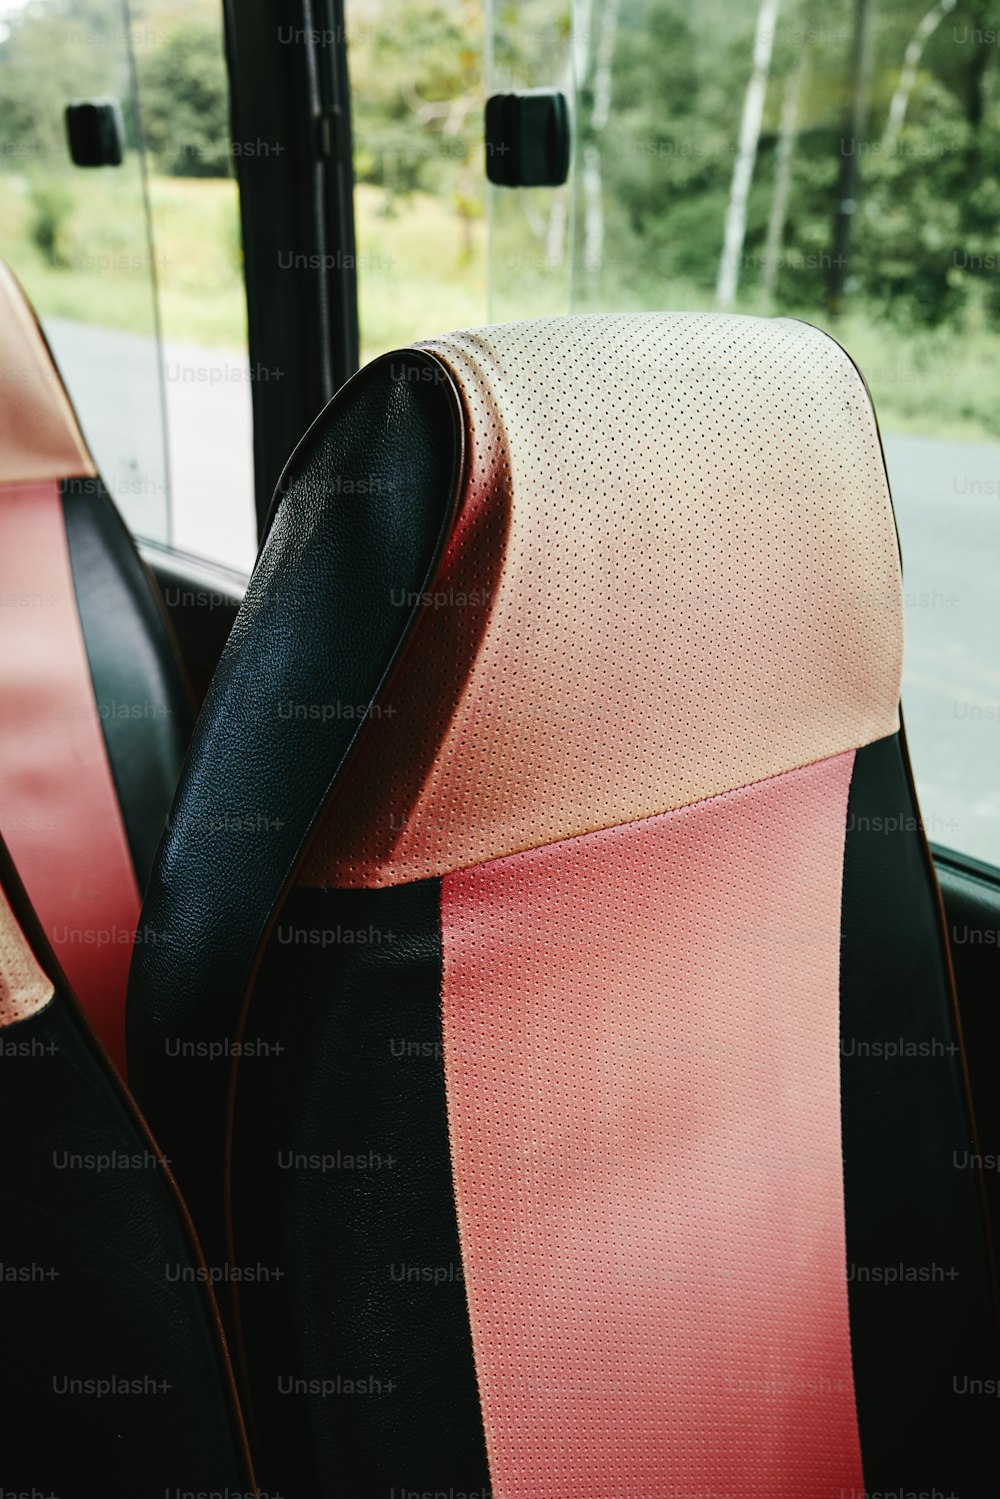 Die Sitze im Bus sind rot und schwarz